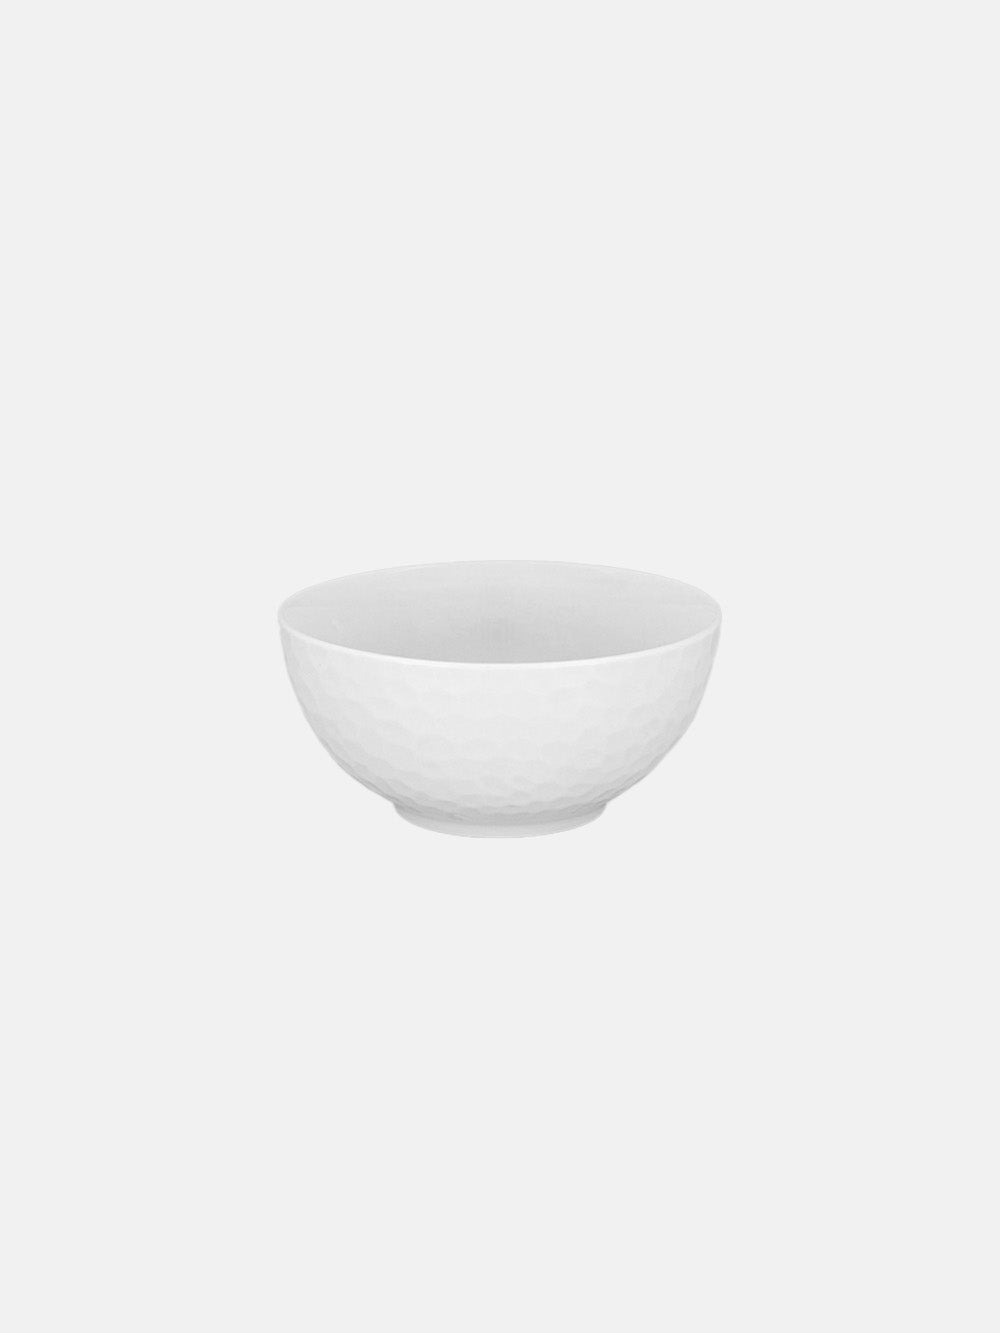 BUBBLES porcelain soup bowl